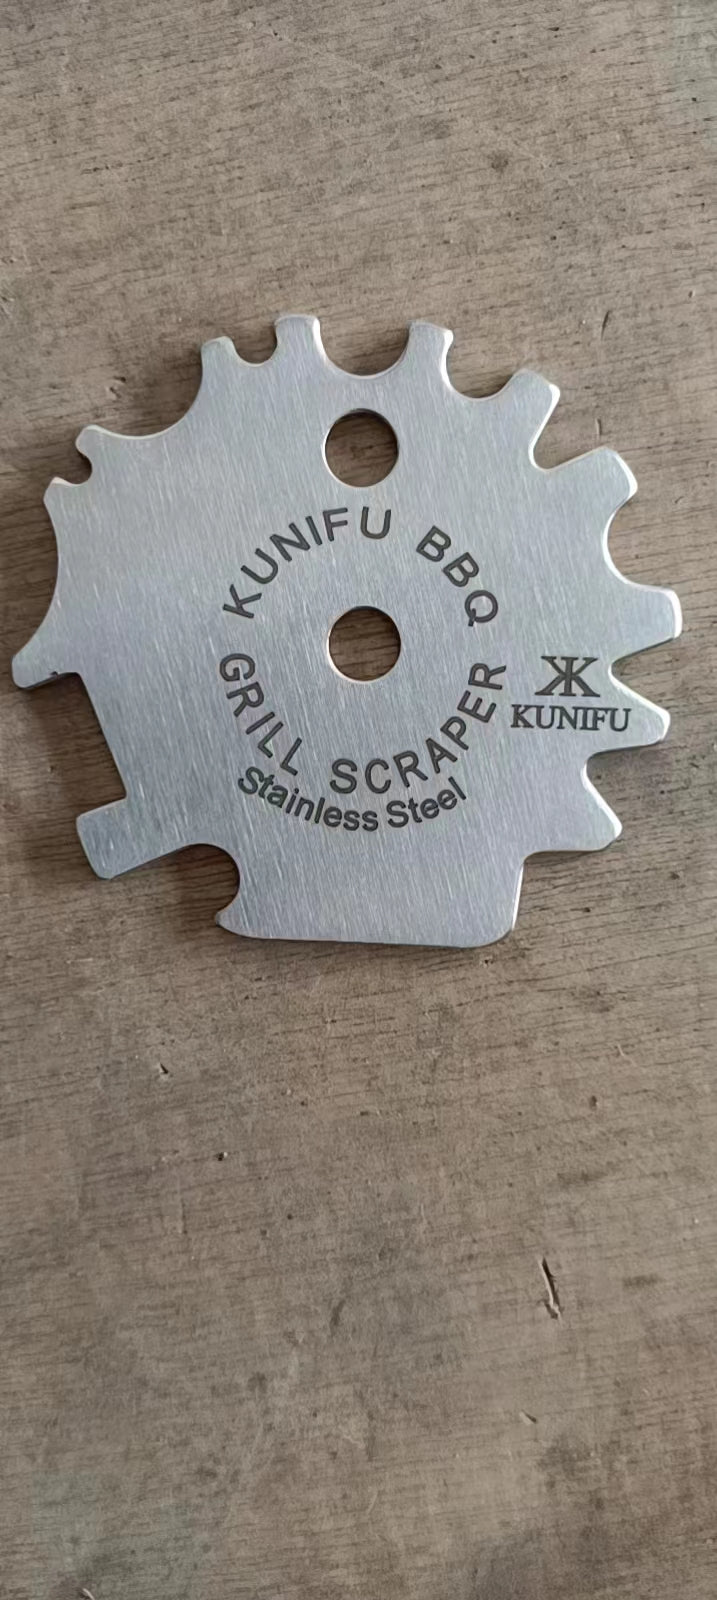 KUNIFU BBQ Grill Scrapper